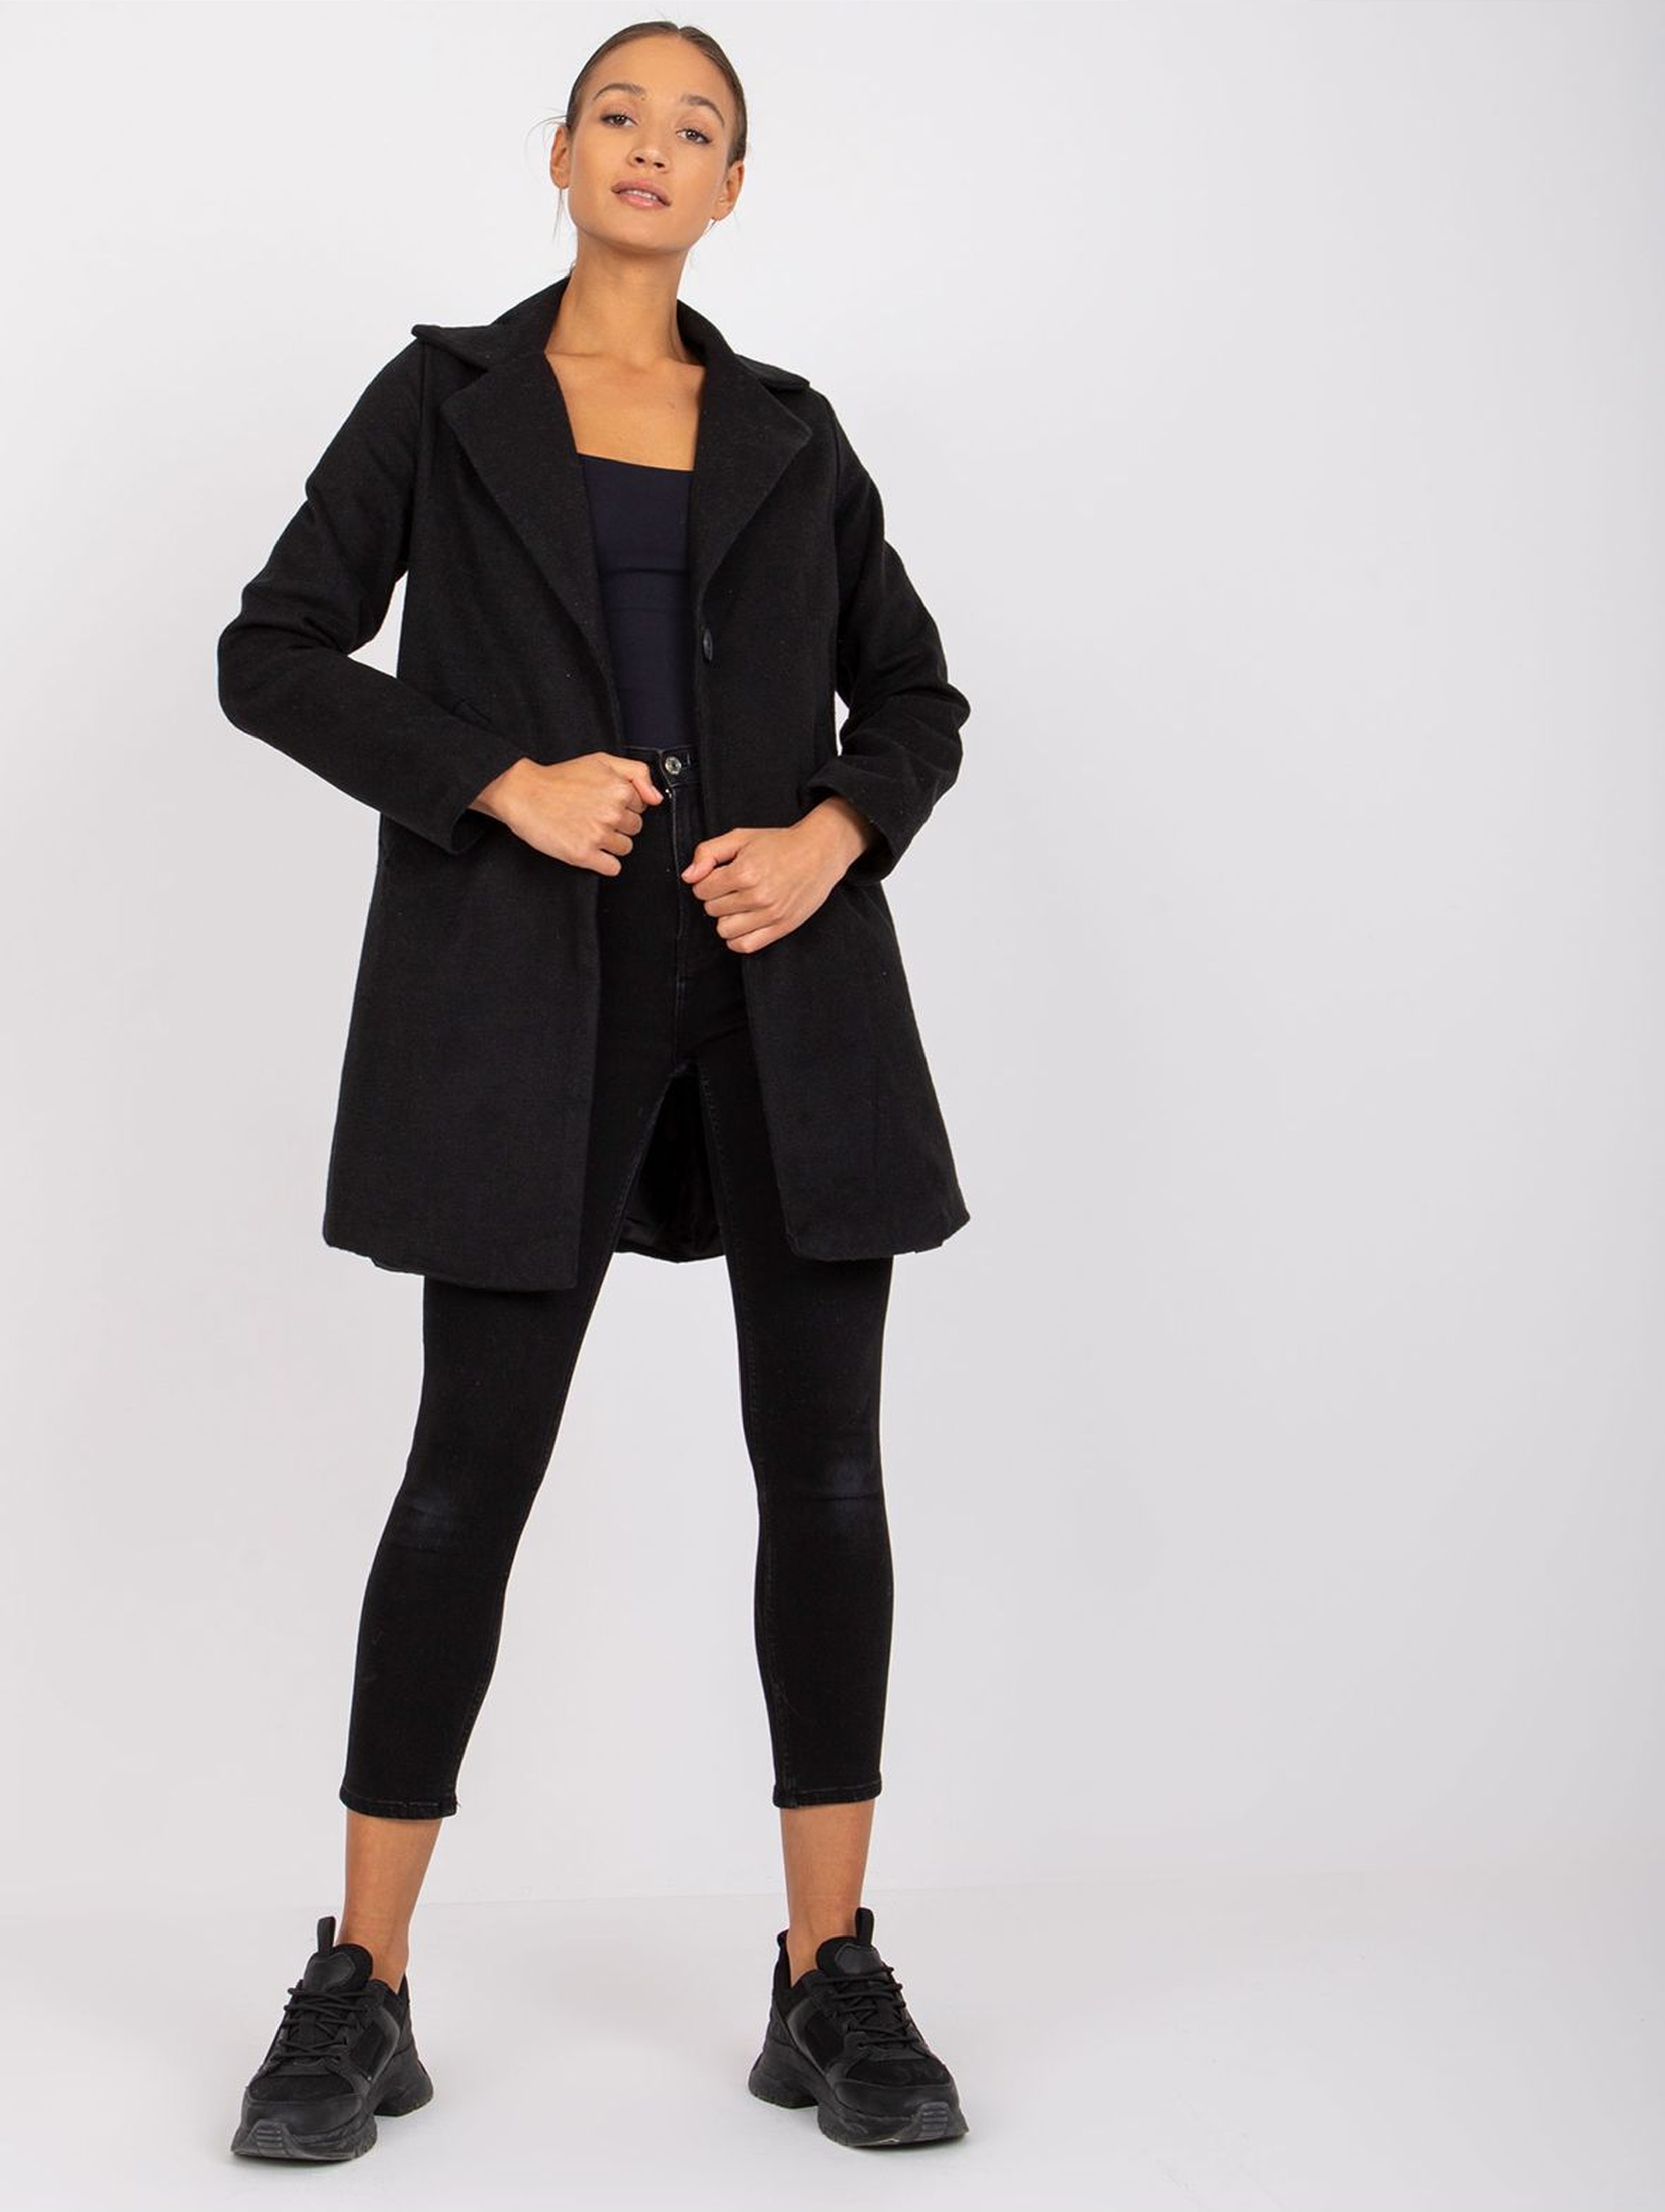 Krótki elegancki płaszcz damski - czarny